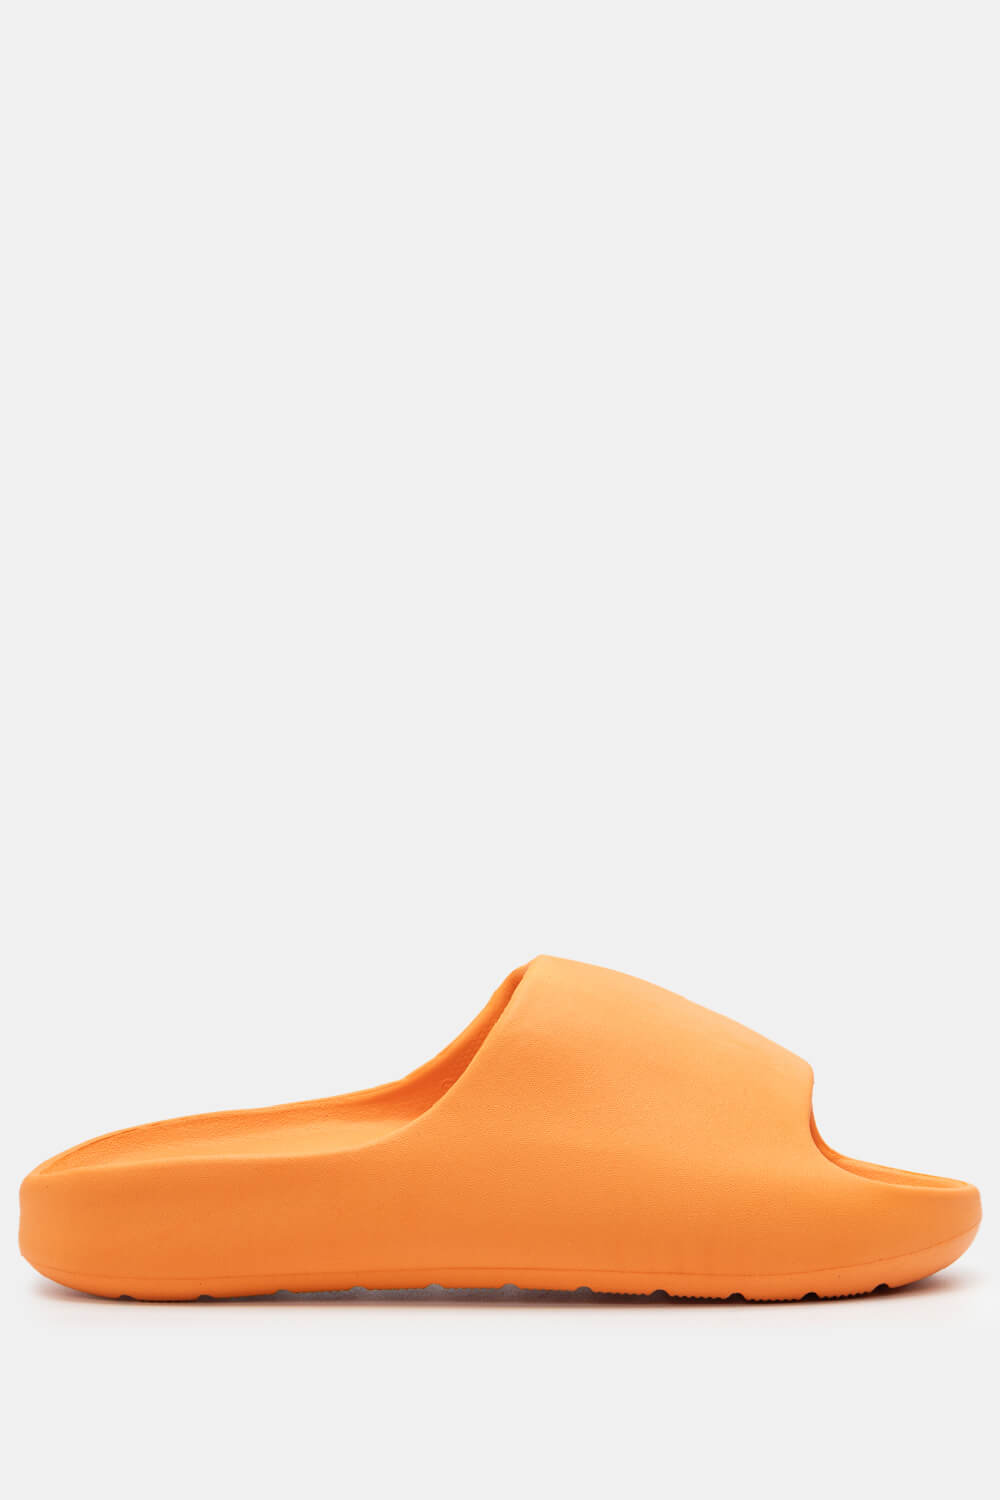 ΠΑΠΟΥΤΣΙΑ > Jelly Shoes Παντόφλες Δίσολες Μονόχρωμες - Πορτοκαλί